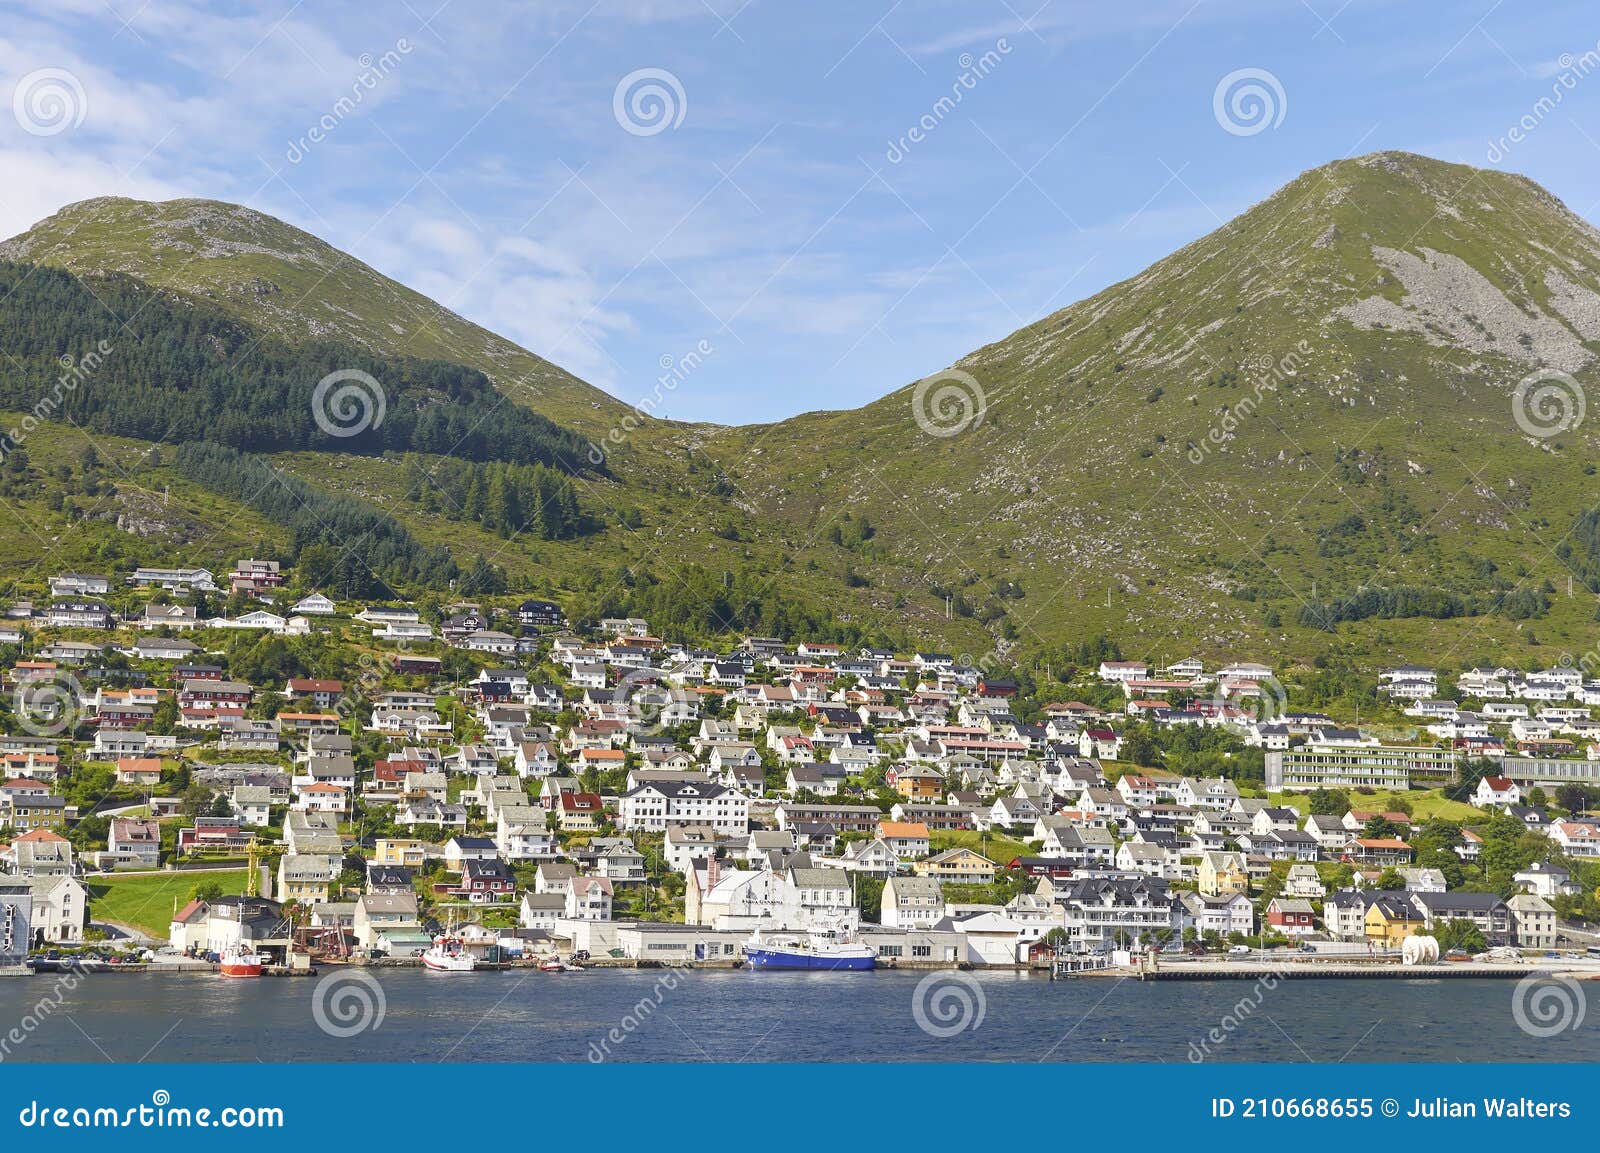 the coastal town of maloy on the island of maloya on norways mountainous west coast